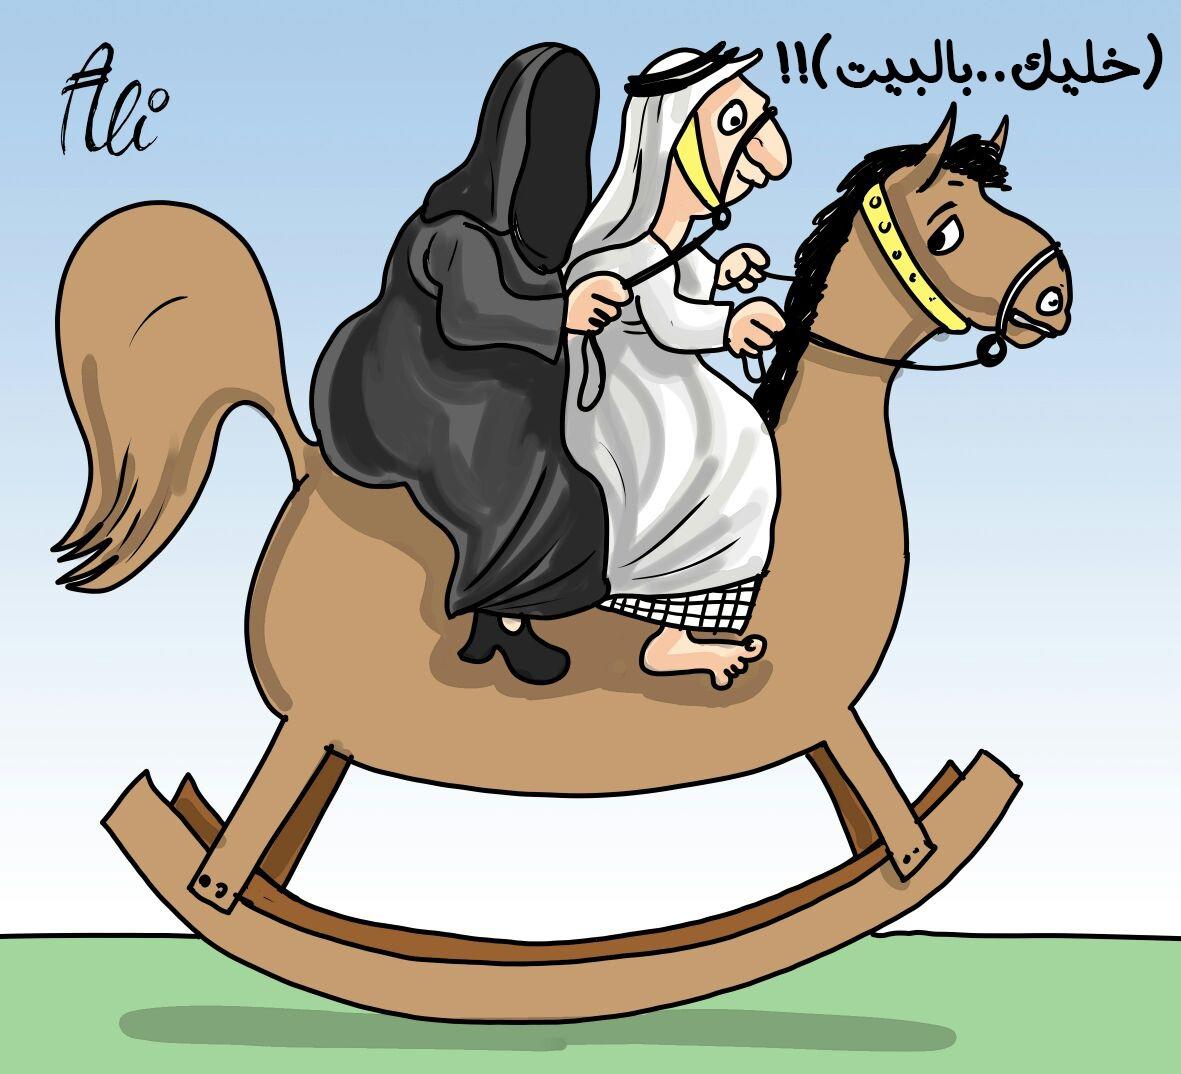 كاريكاتير "هليك بالبيت" لـ"علي القحيص"